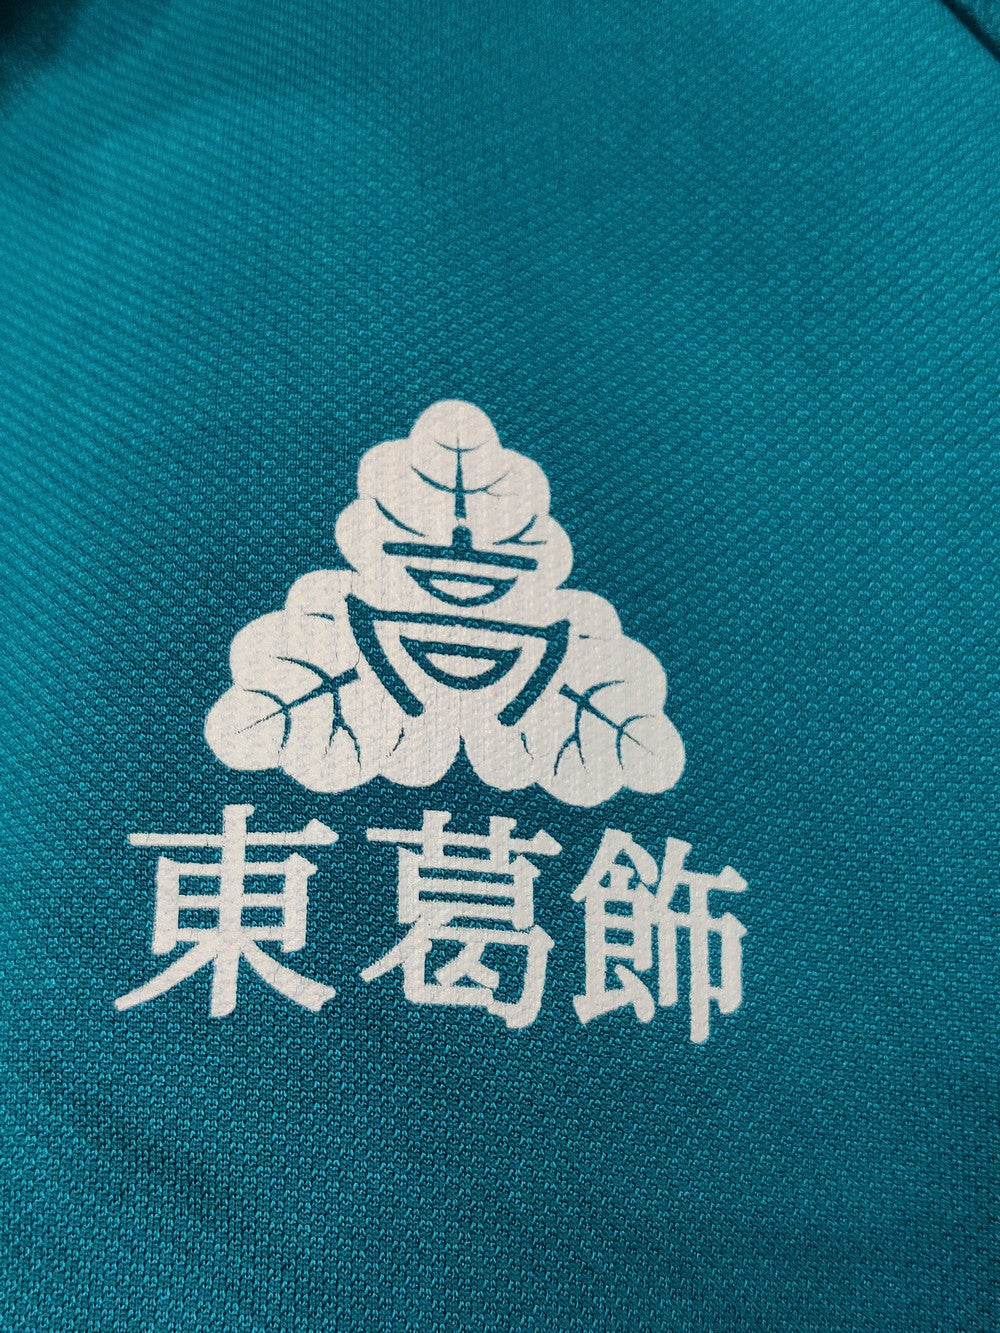 Nikko Branded Original Polyester For Men Tracksuits